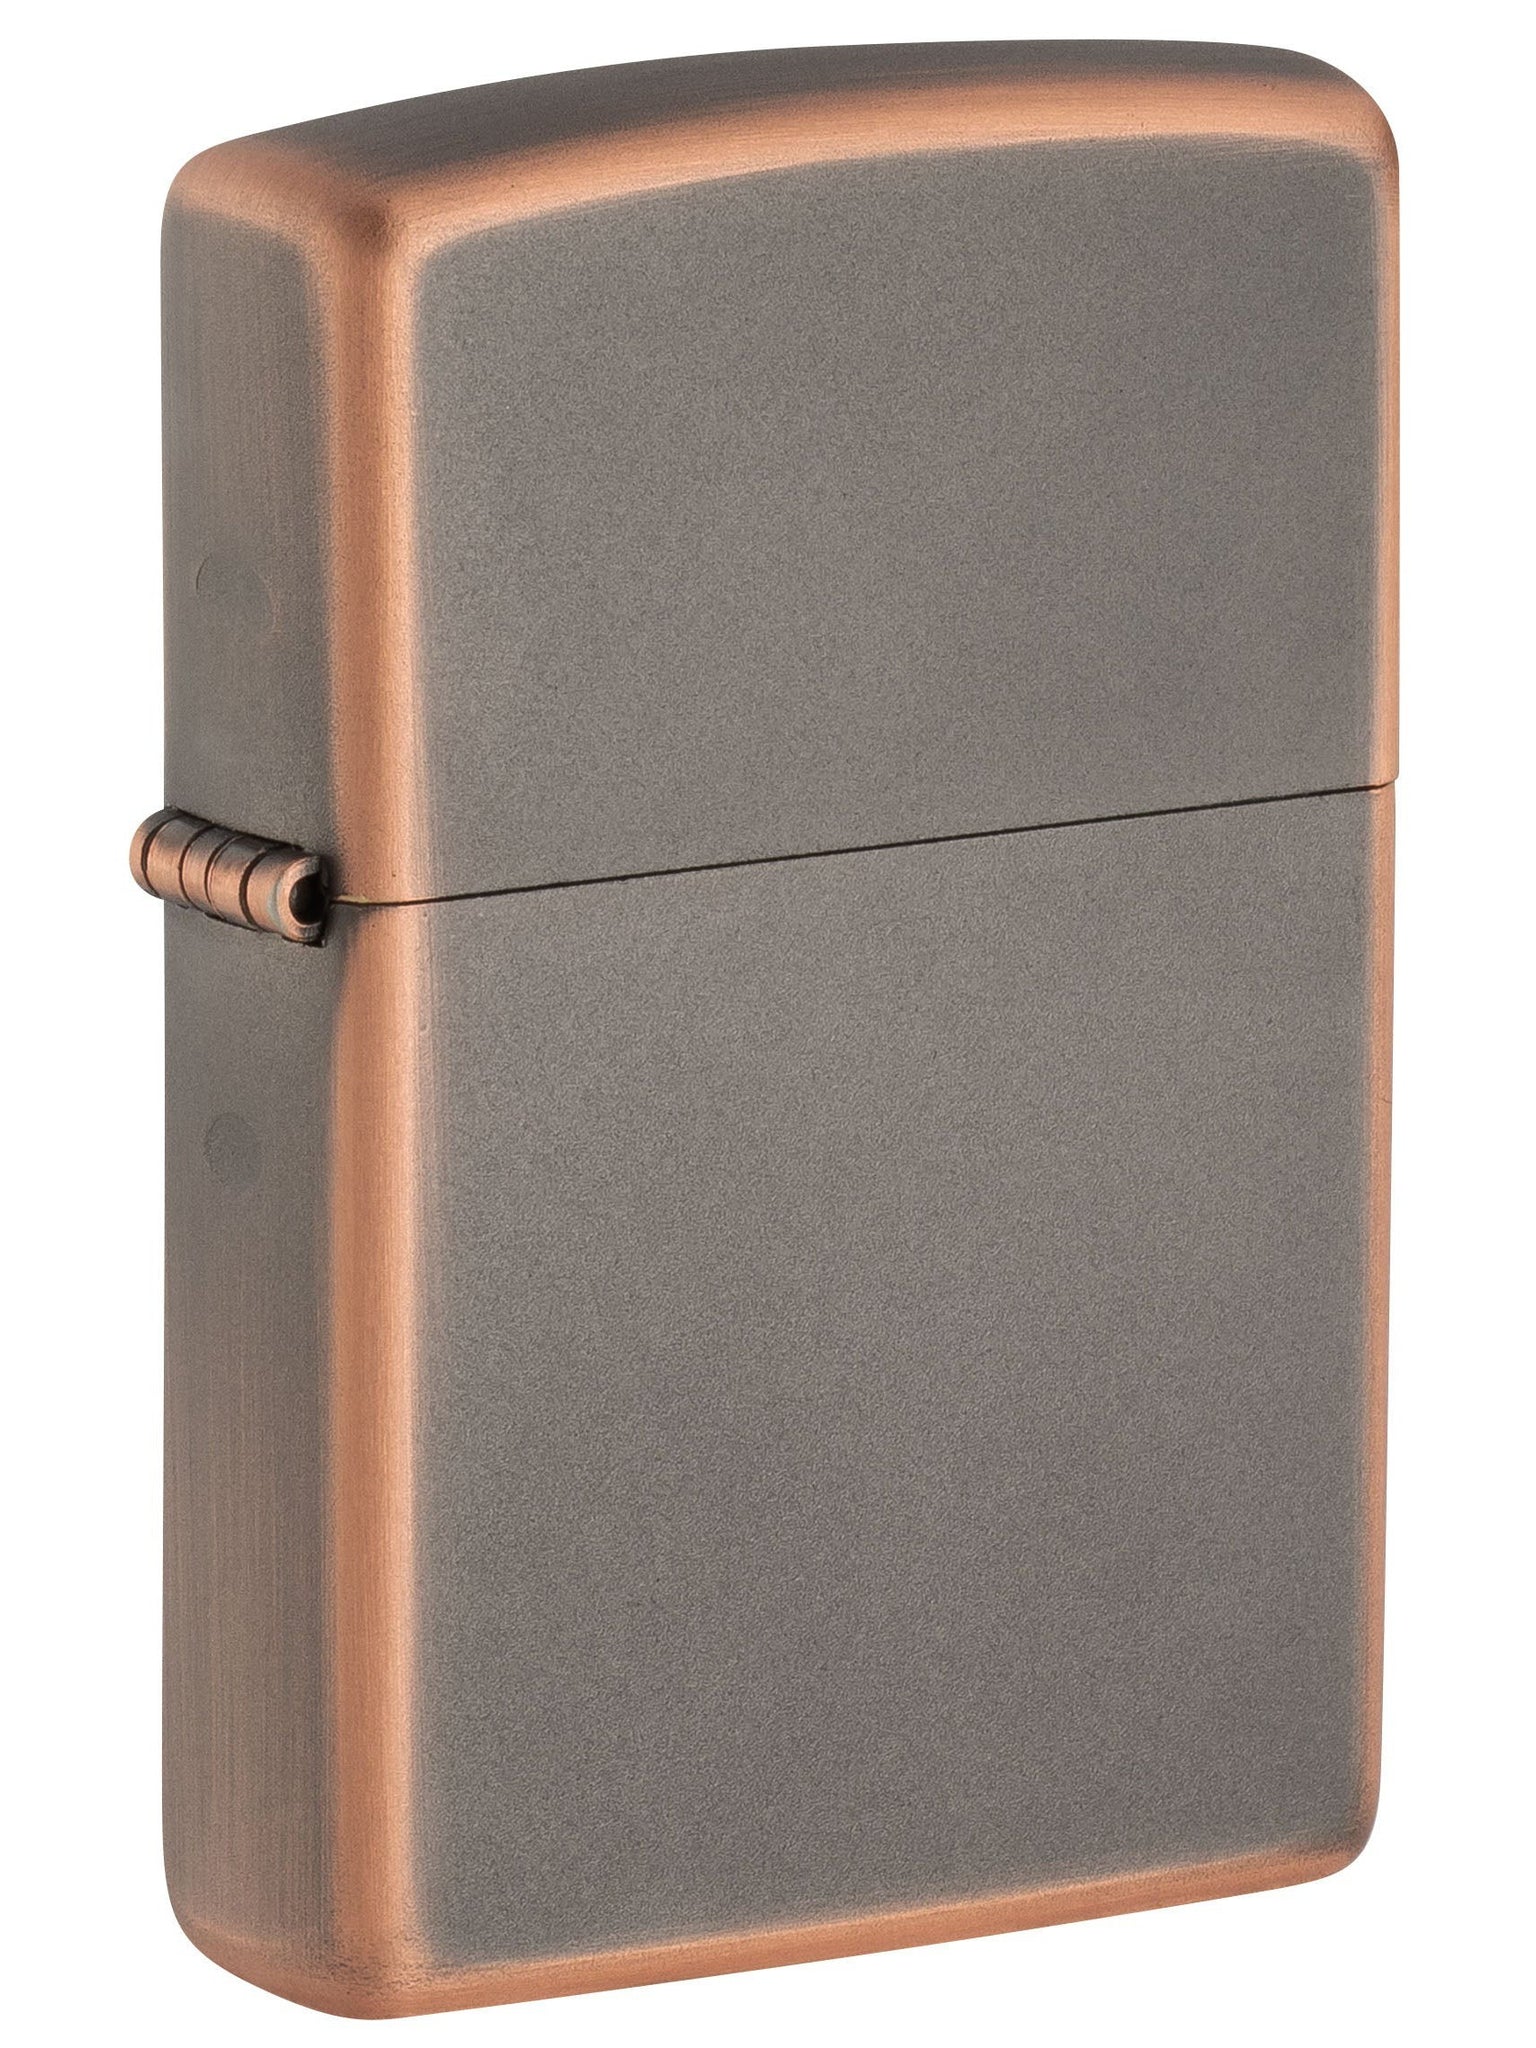 Zippo Lighter: Rustic Bronze - Rustic Bronze 49839